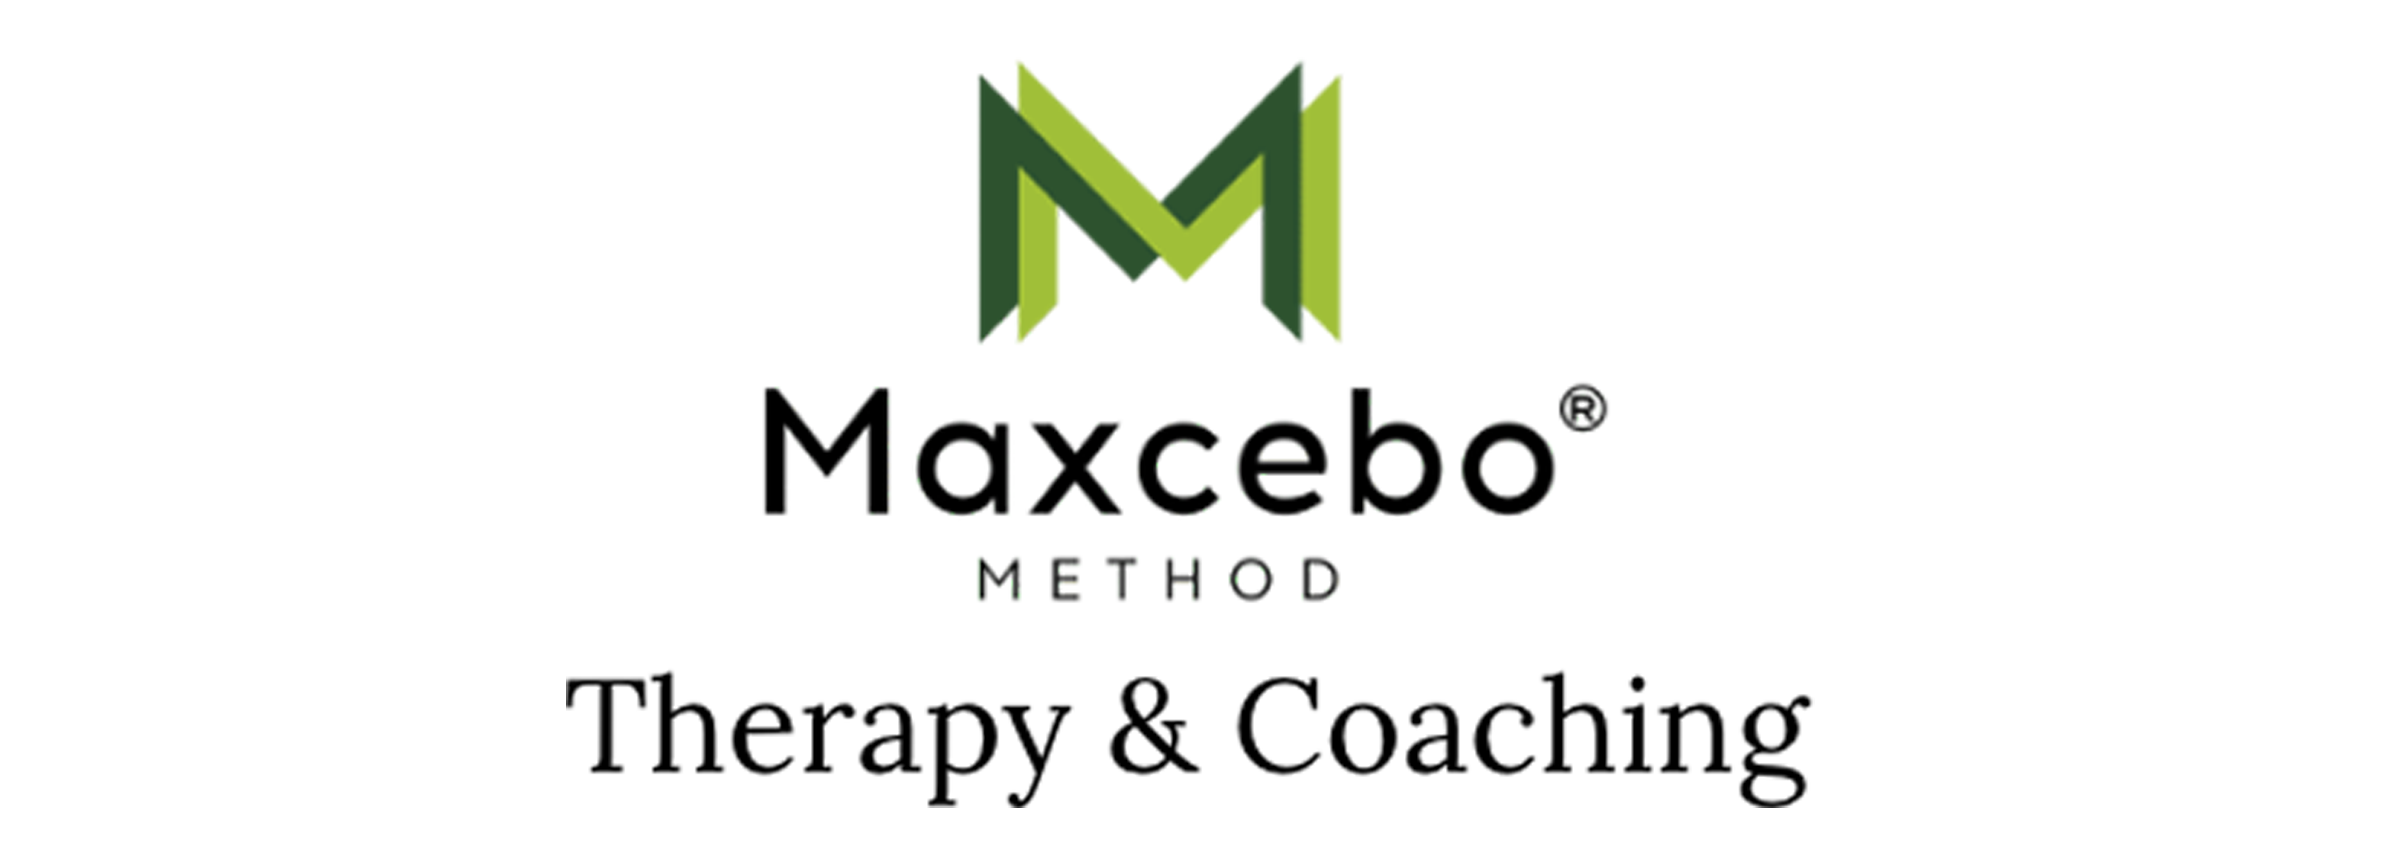 Maxcebo logo